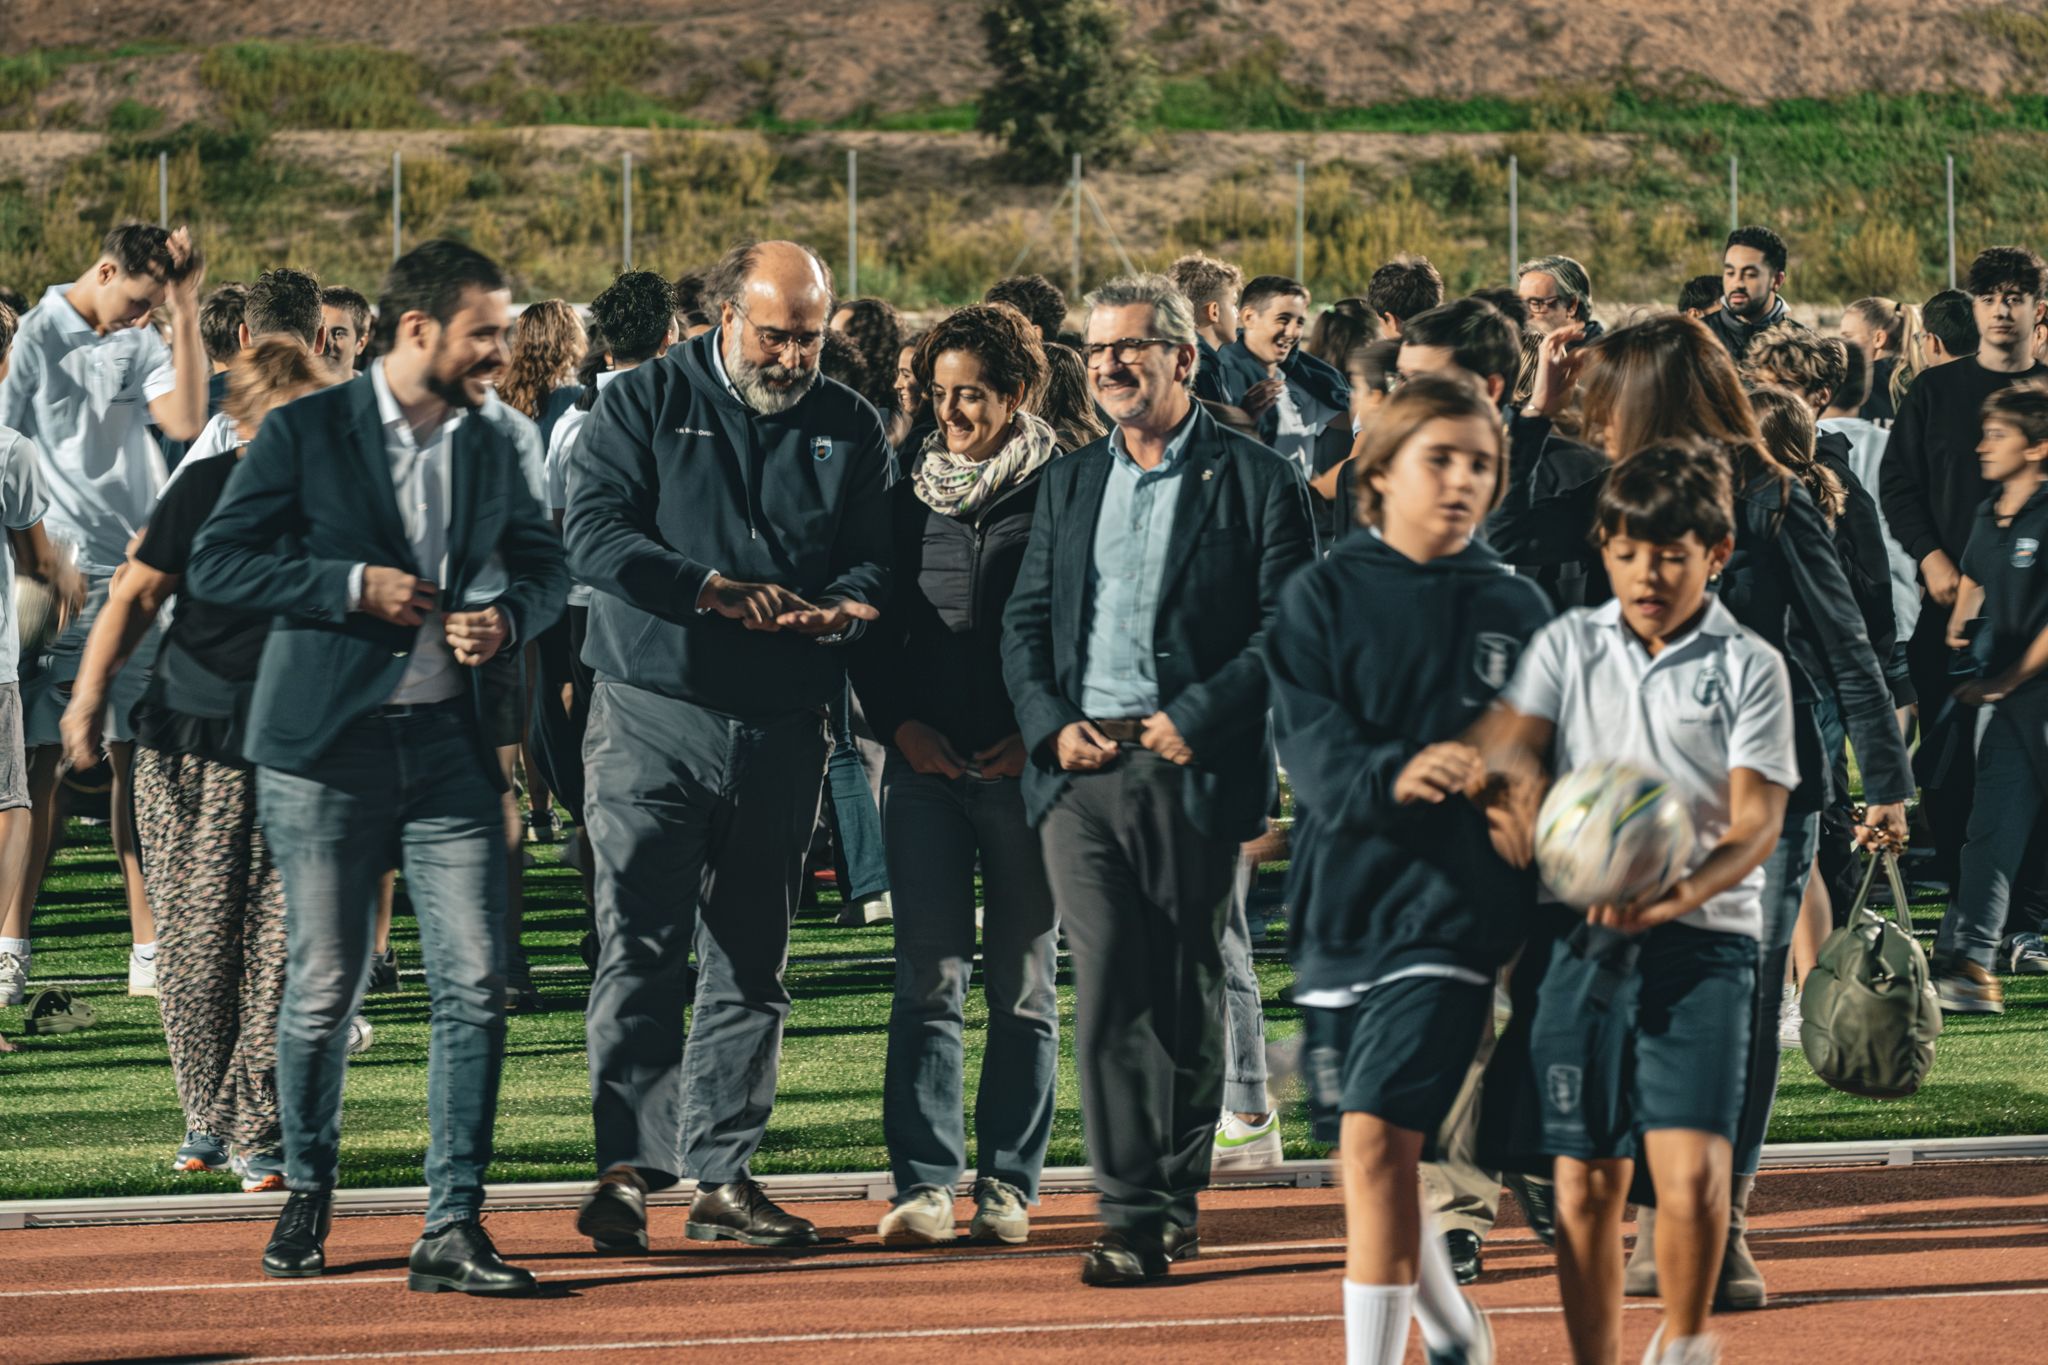 El Club de Rugby Sant Cugat presenta els seus equips. FOTO: Ale Gómez